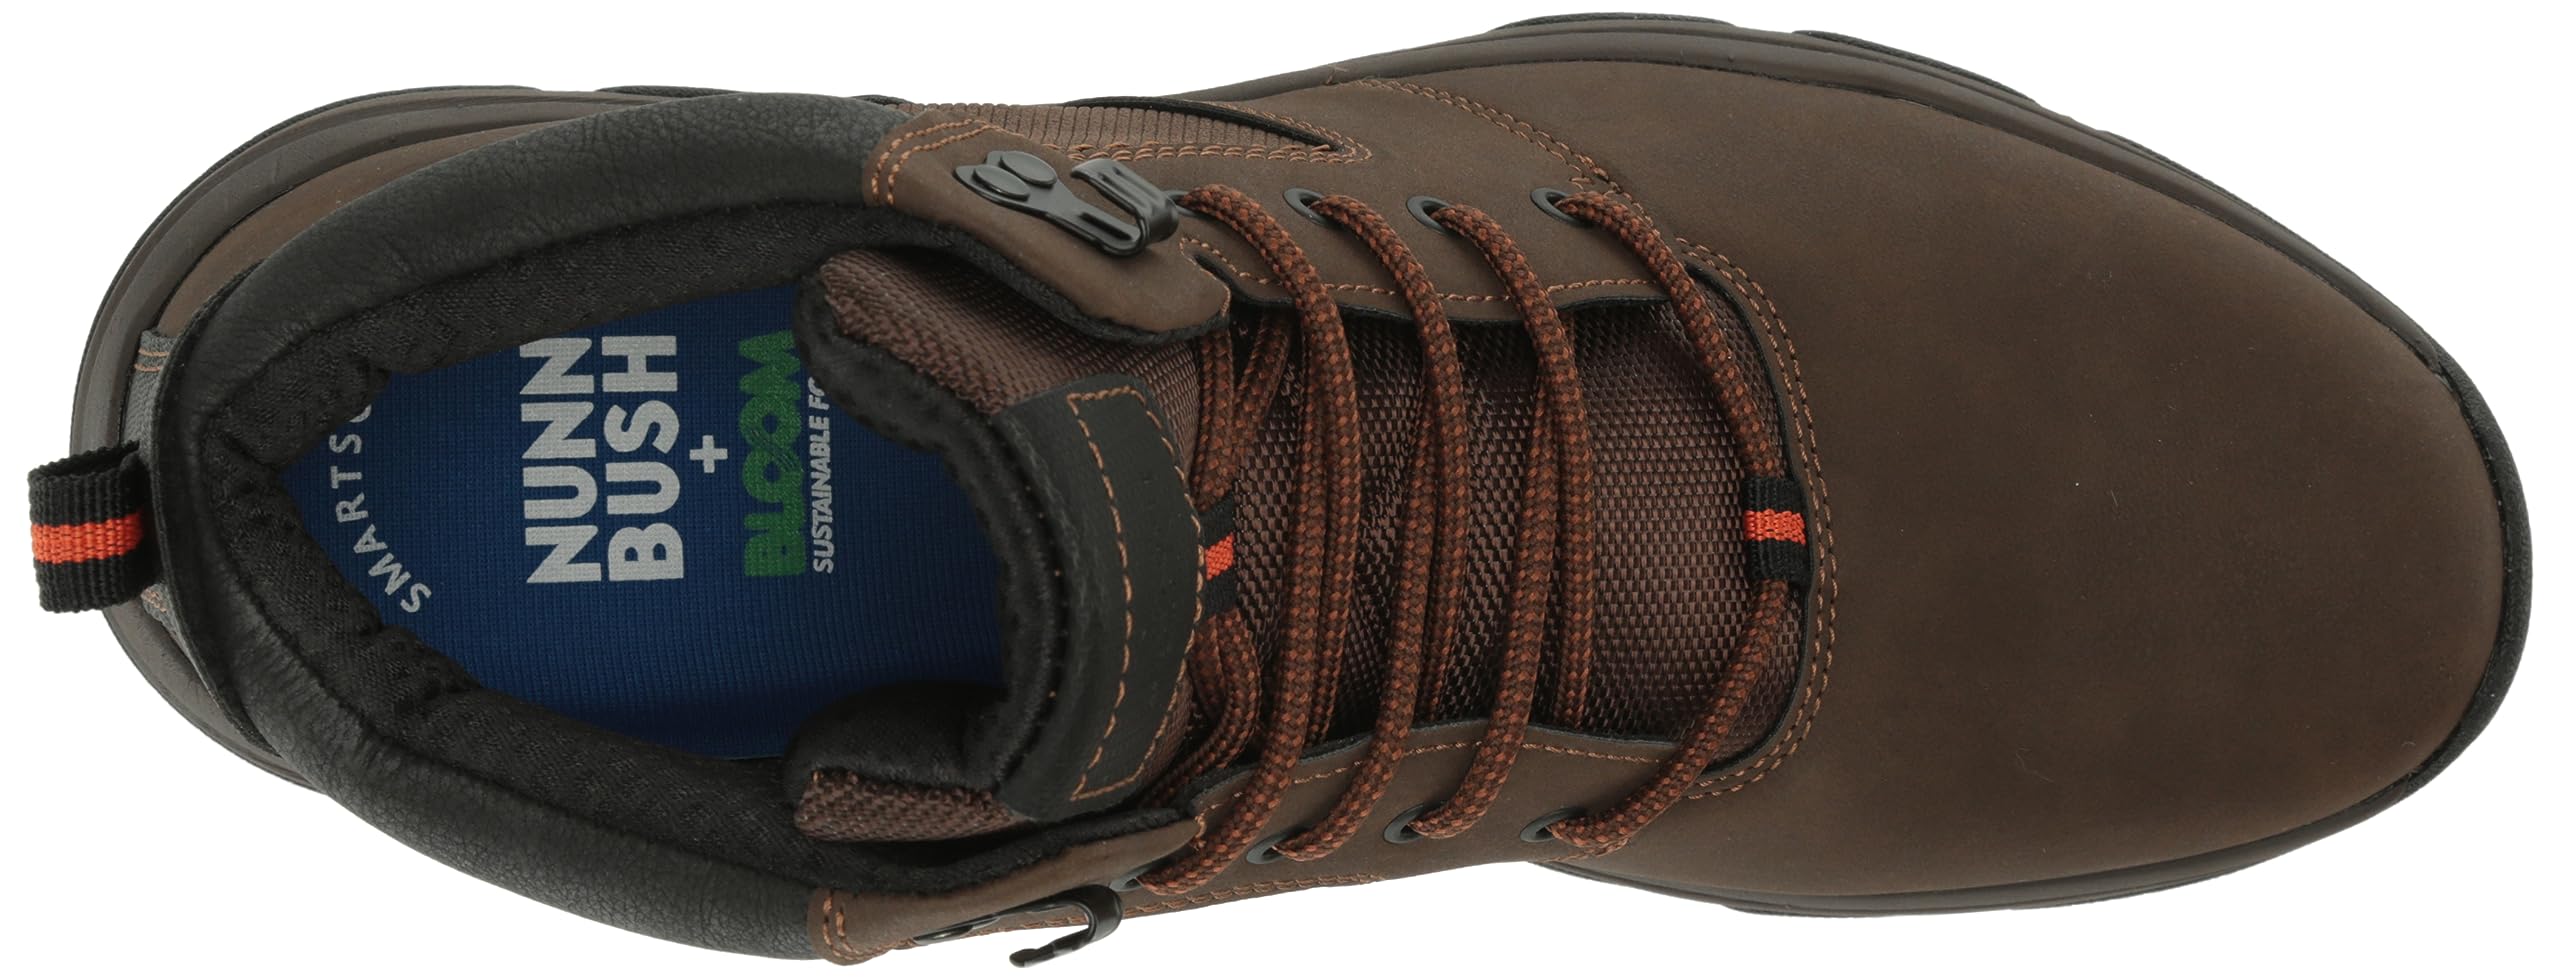 Nunn Bush Men's Excavate Plain Toe Chukka Mid Ankle Comfortable Hiking Boot